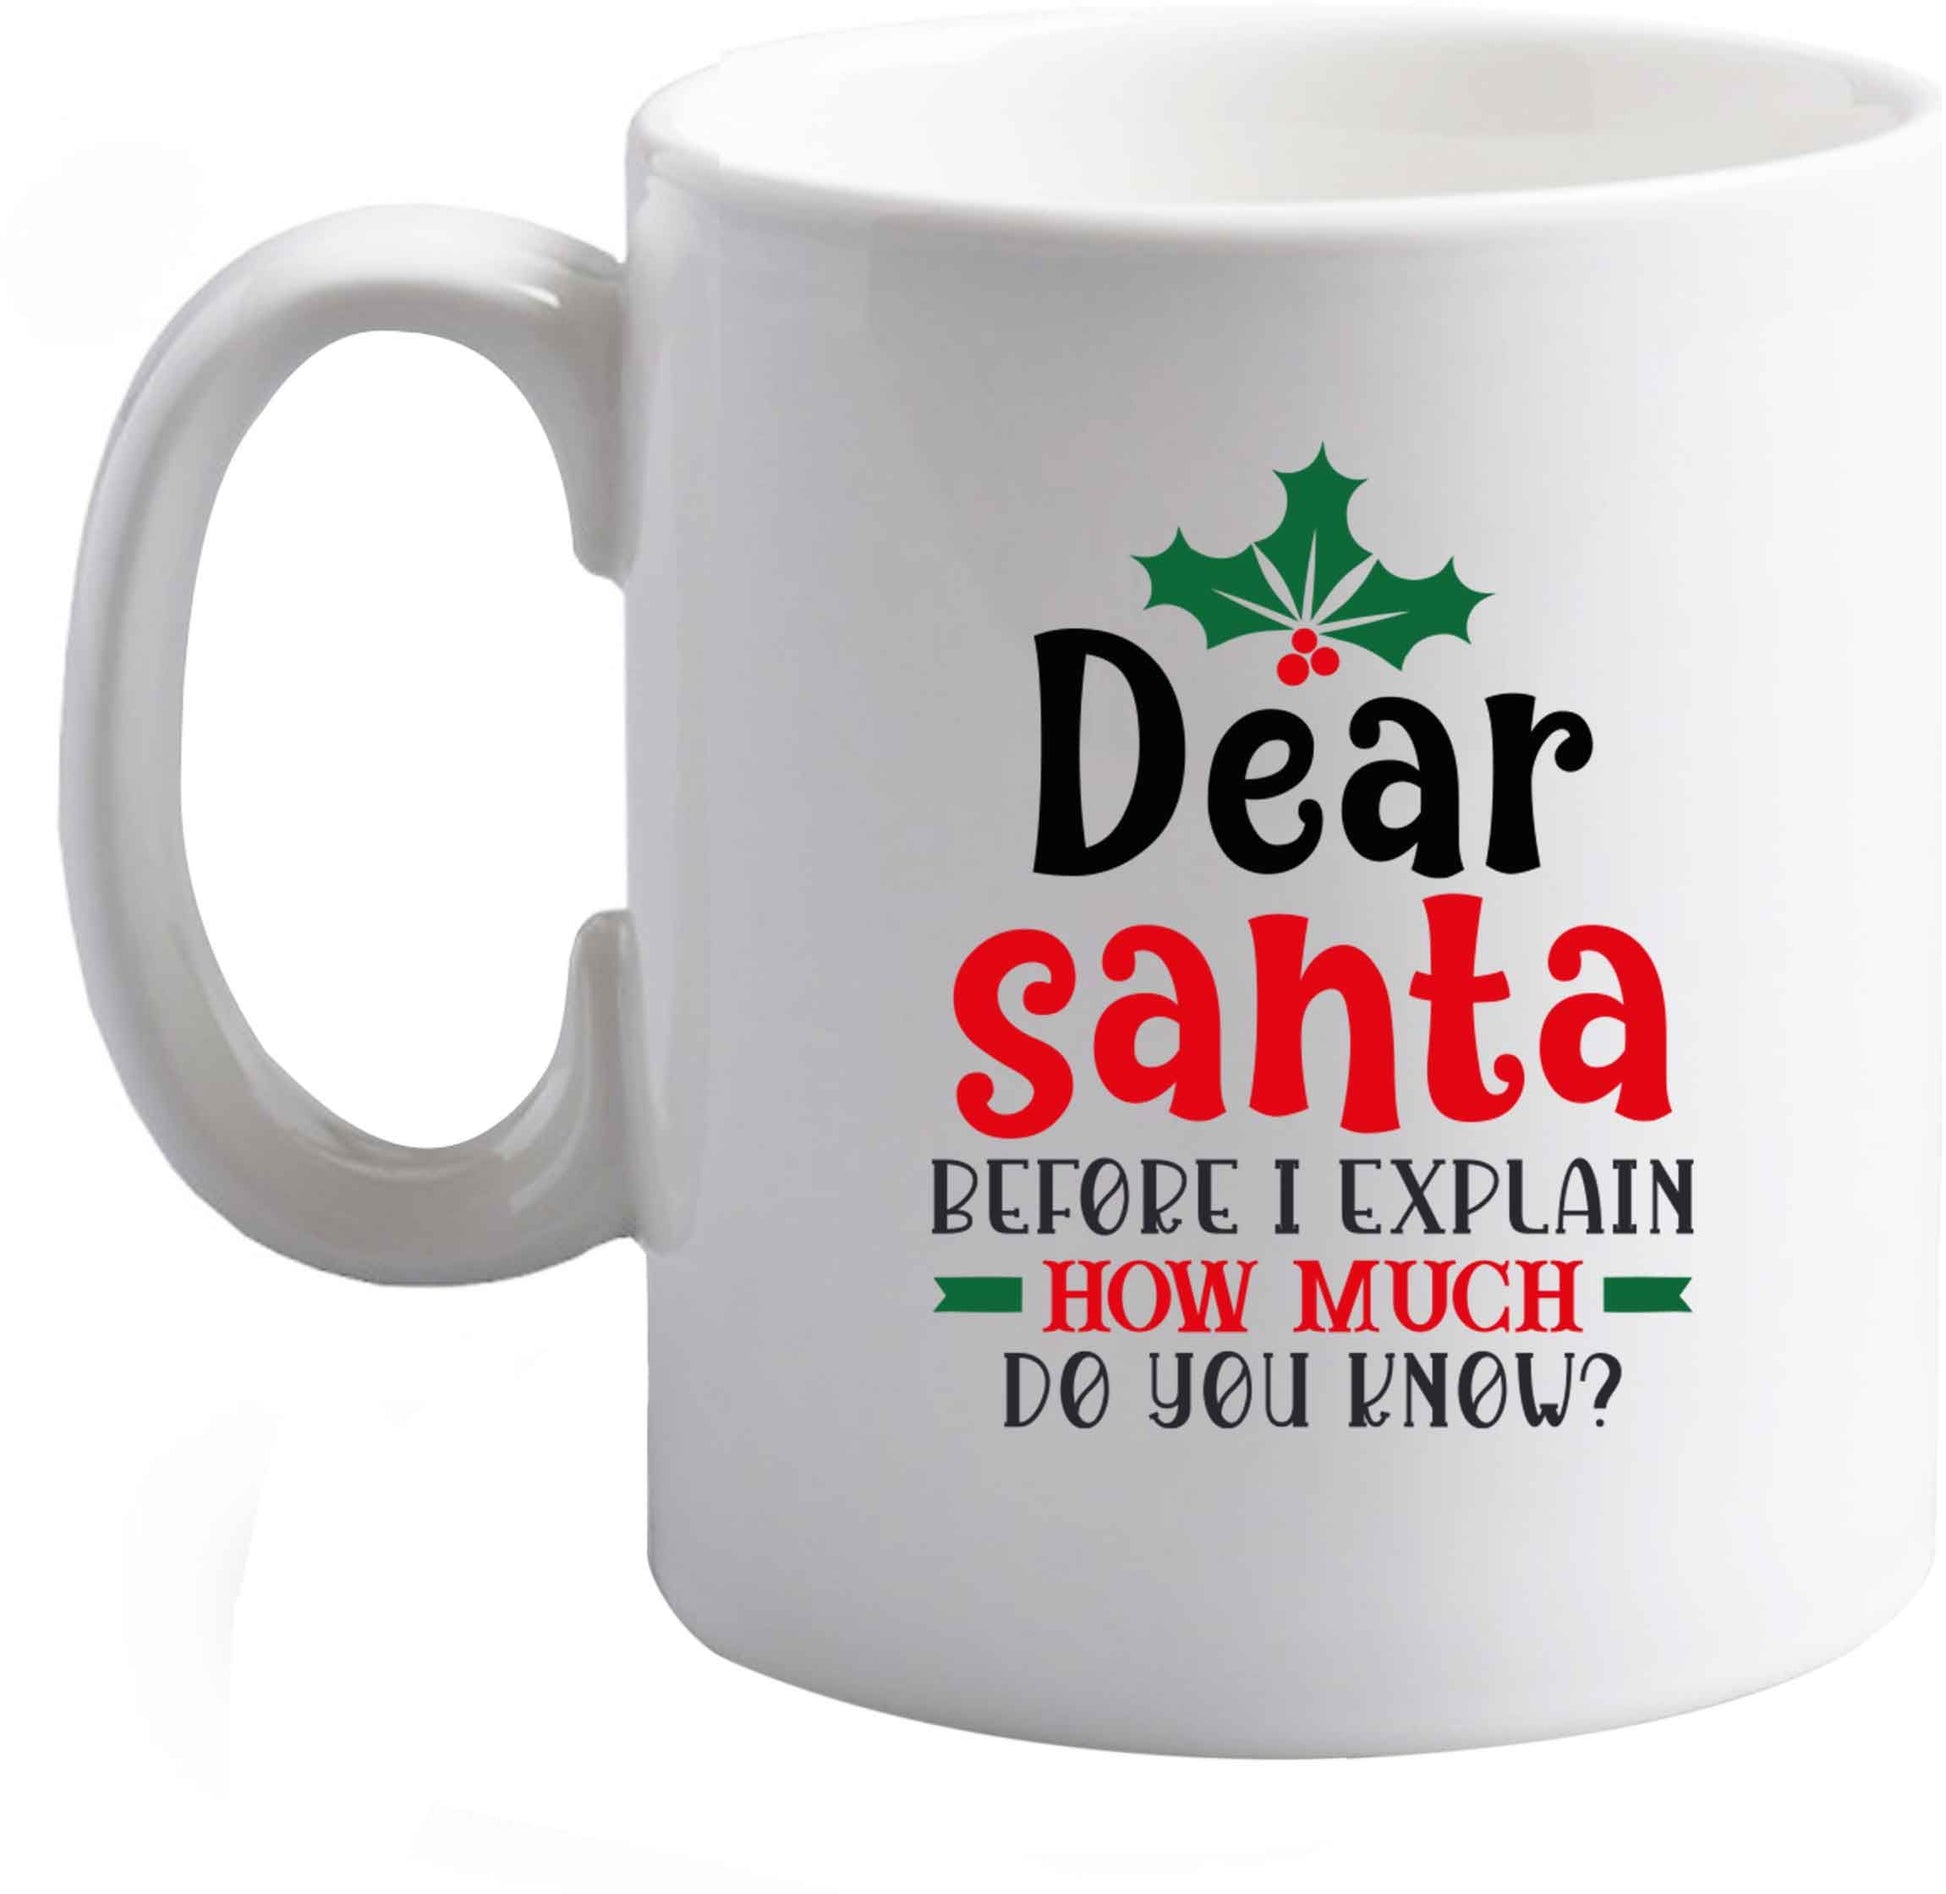 10 oz Santa before I explain how much do you know? ceramic mug right handed